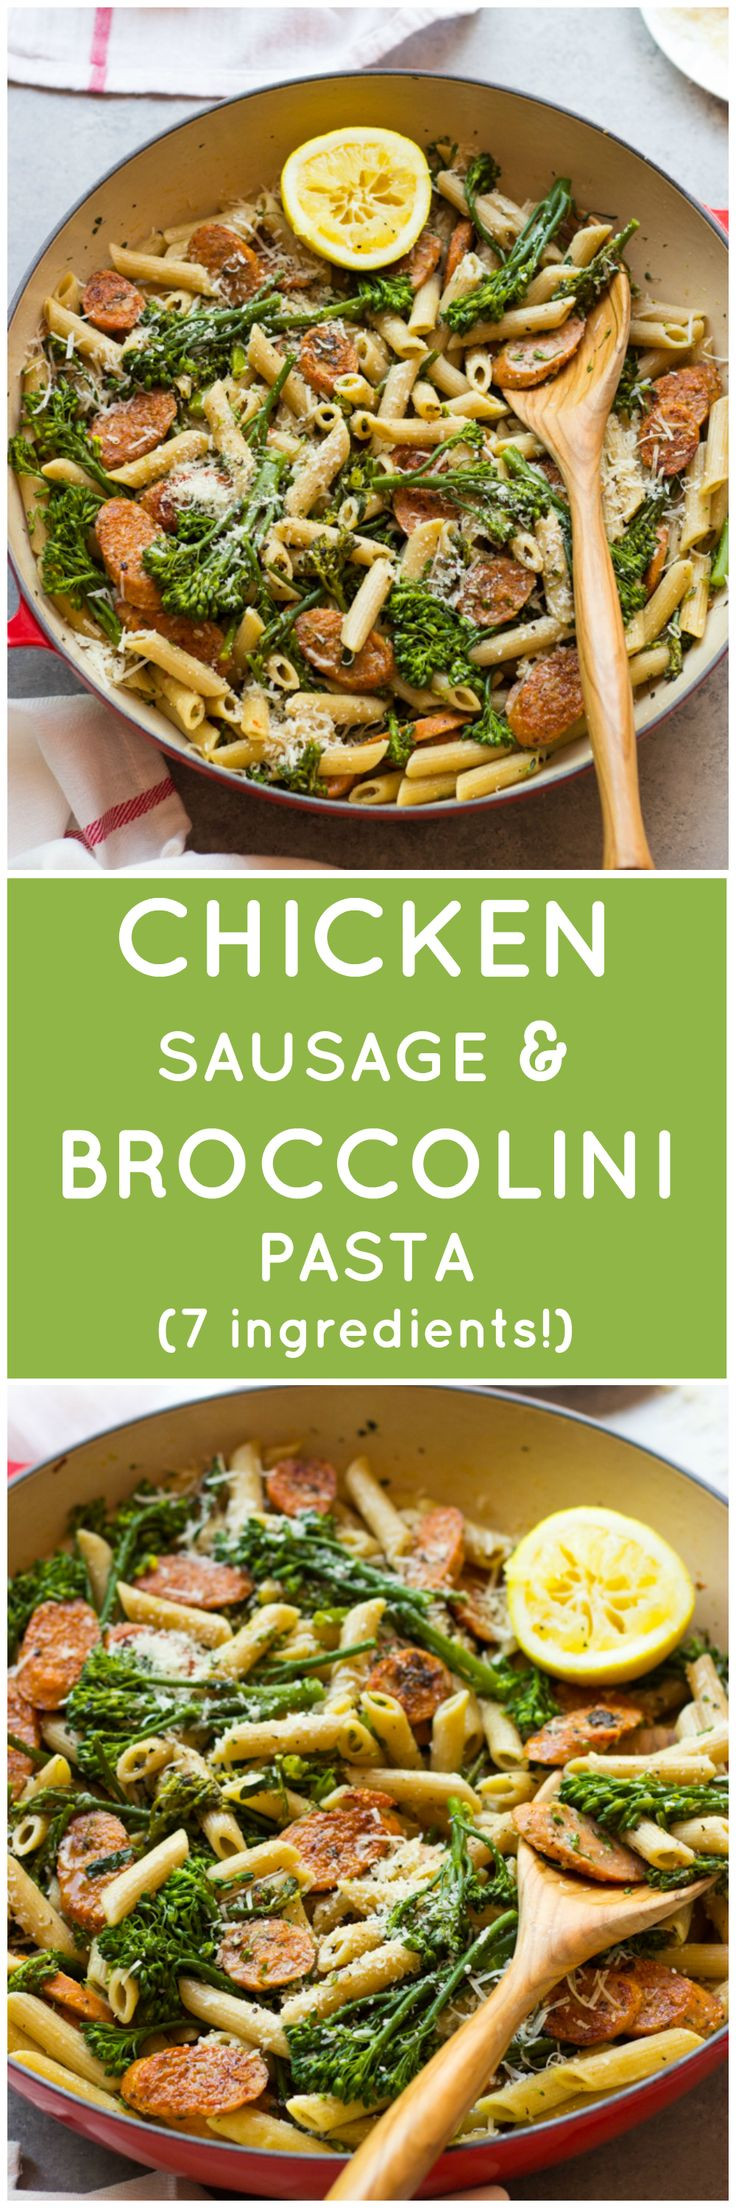 Chicken Sausage Recipes Healthy 20 Best 100 Chicken Sausage Recipes On Pinterest